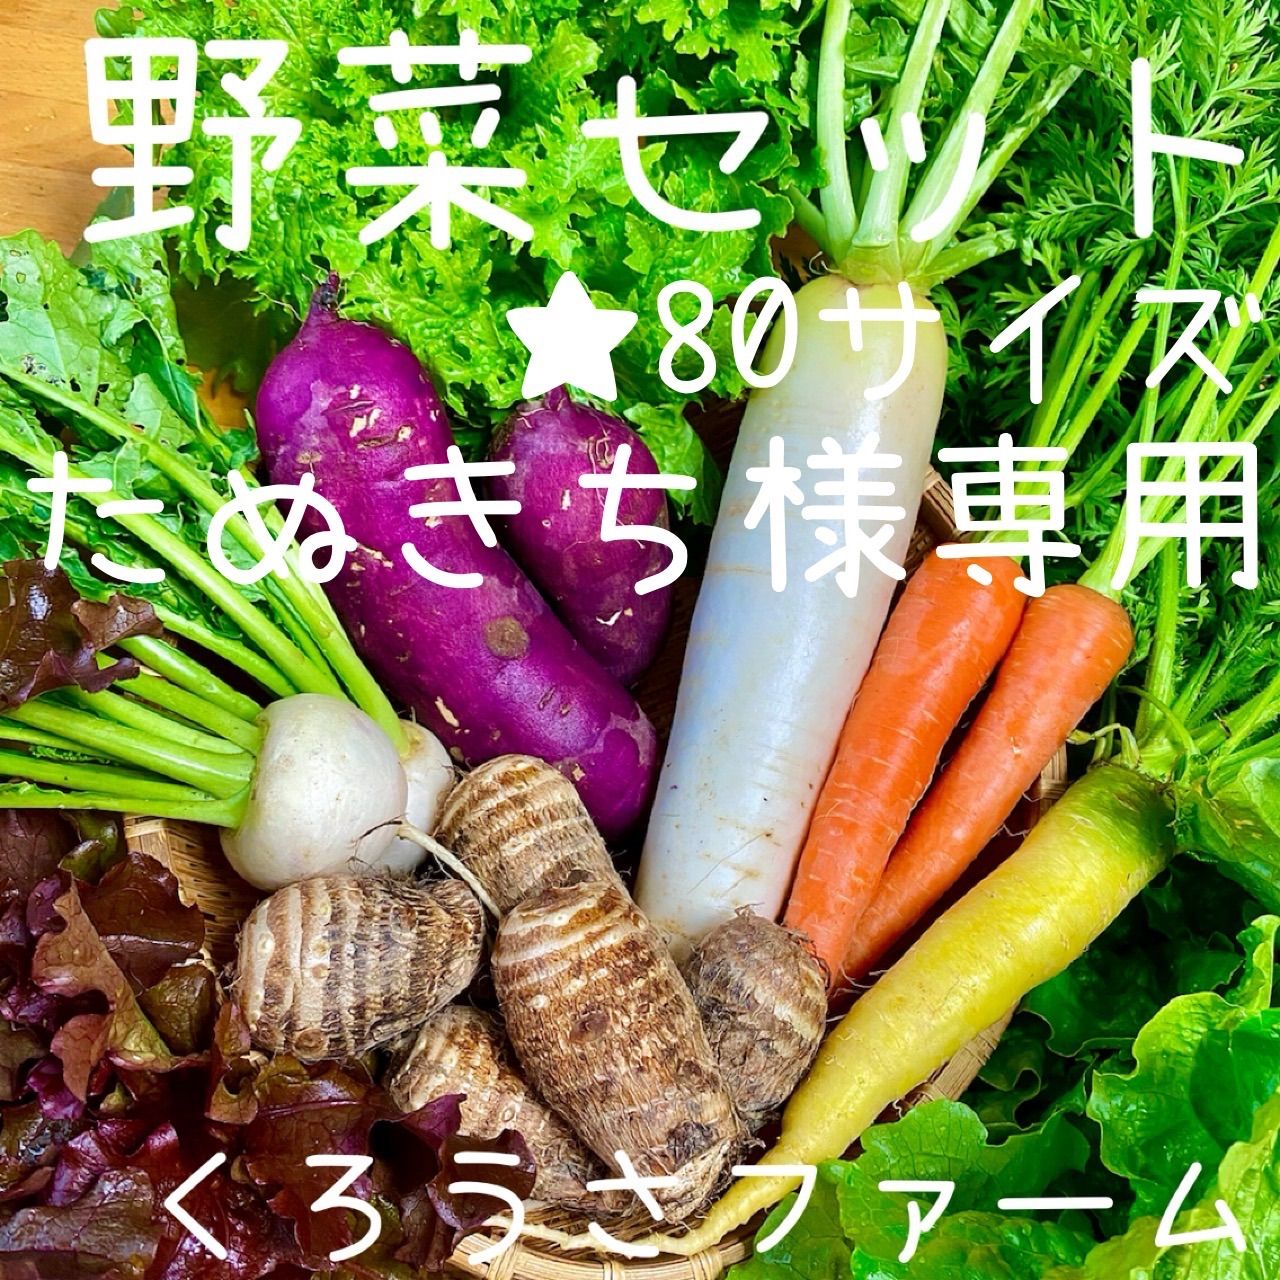 たぬきち様専用 野菜セット 野菜詰め合わせ 80サイズ 愛知県産 - メルカリ